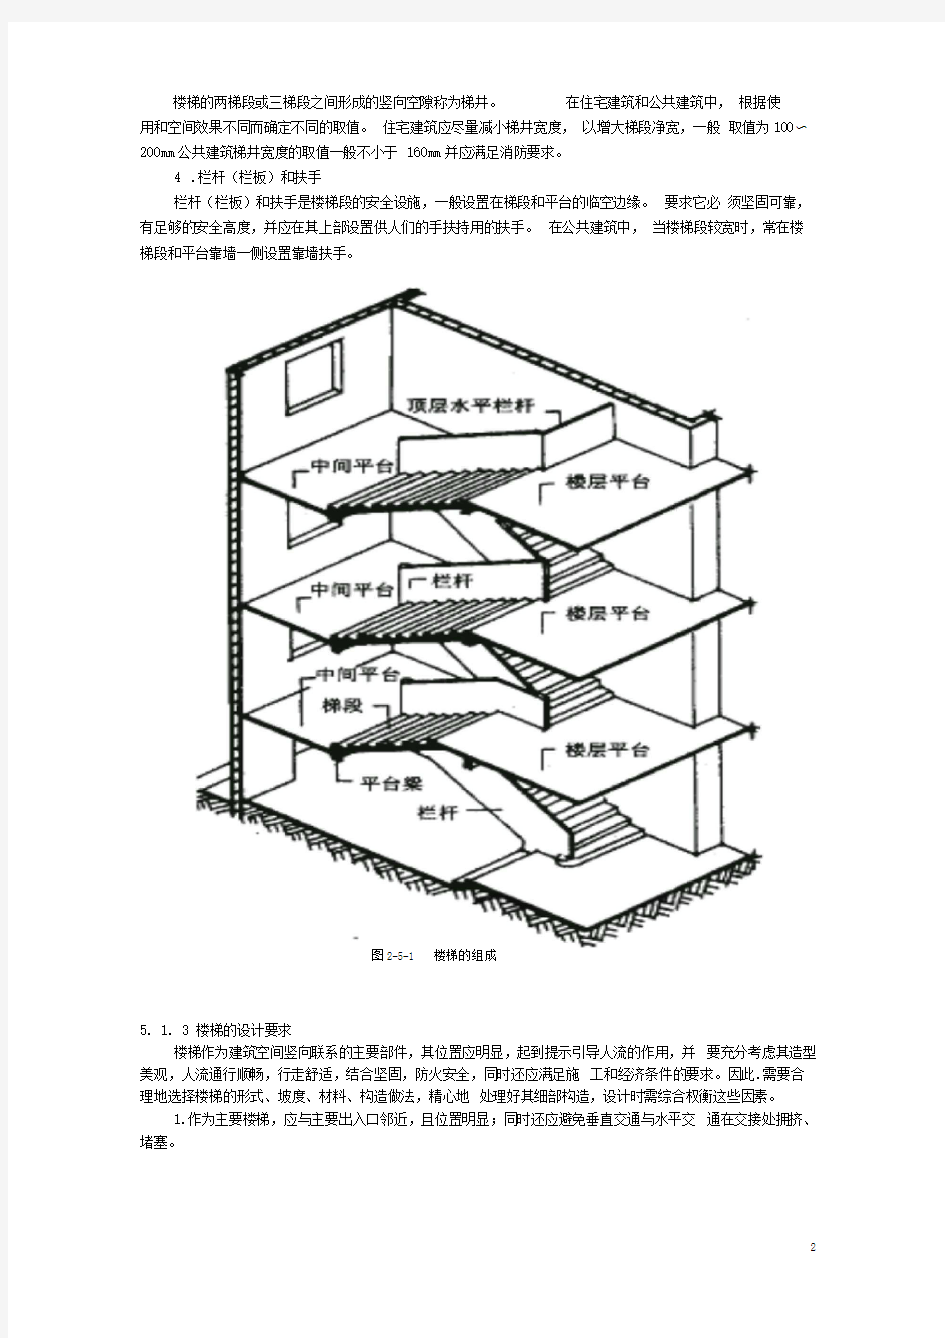 楼梯建筑设计规范